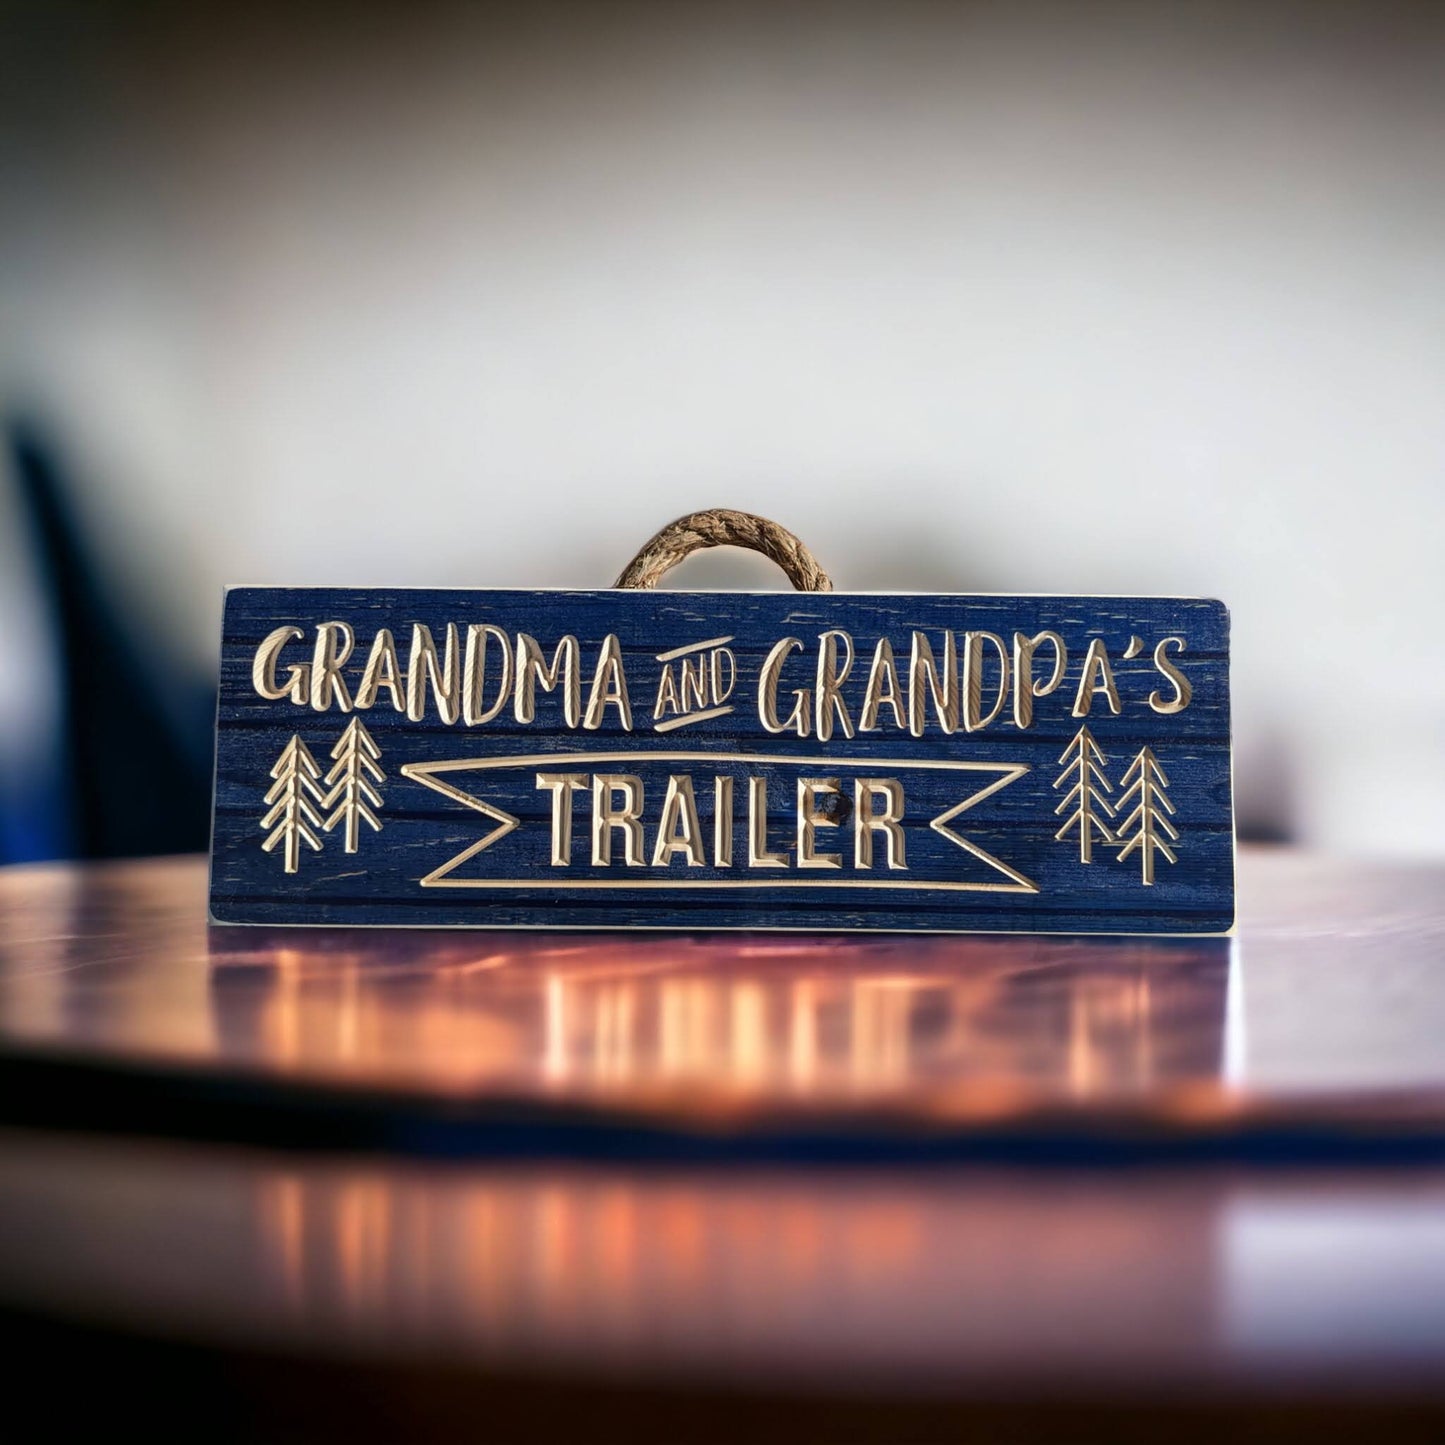 Grandma and Grandpa's trailer sign